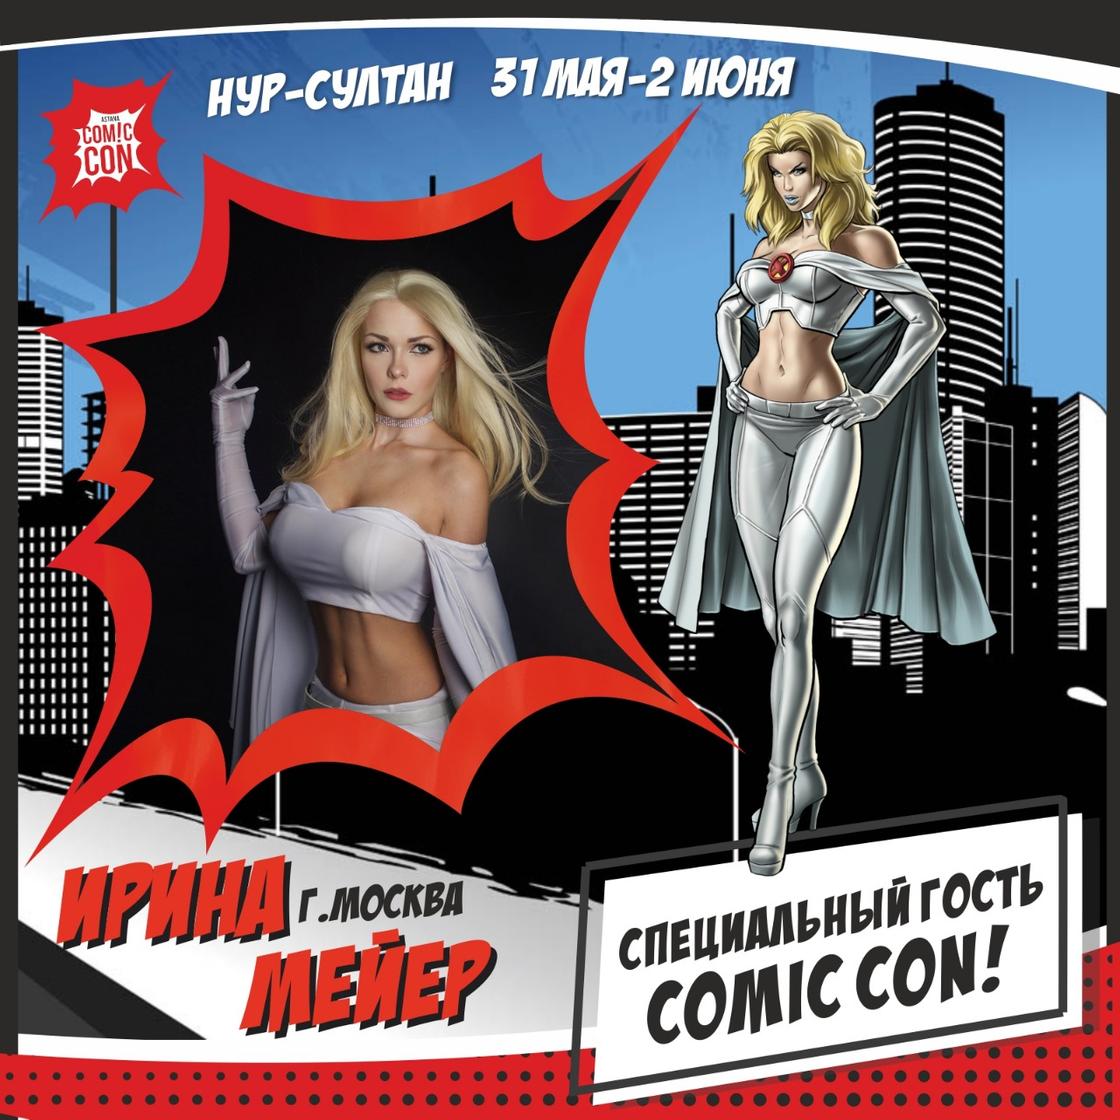 Зарубежные звезды косплея примут участие в конкурсе костюмов на Comic Con Astana